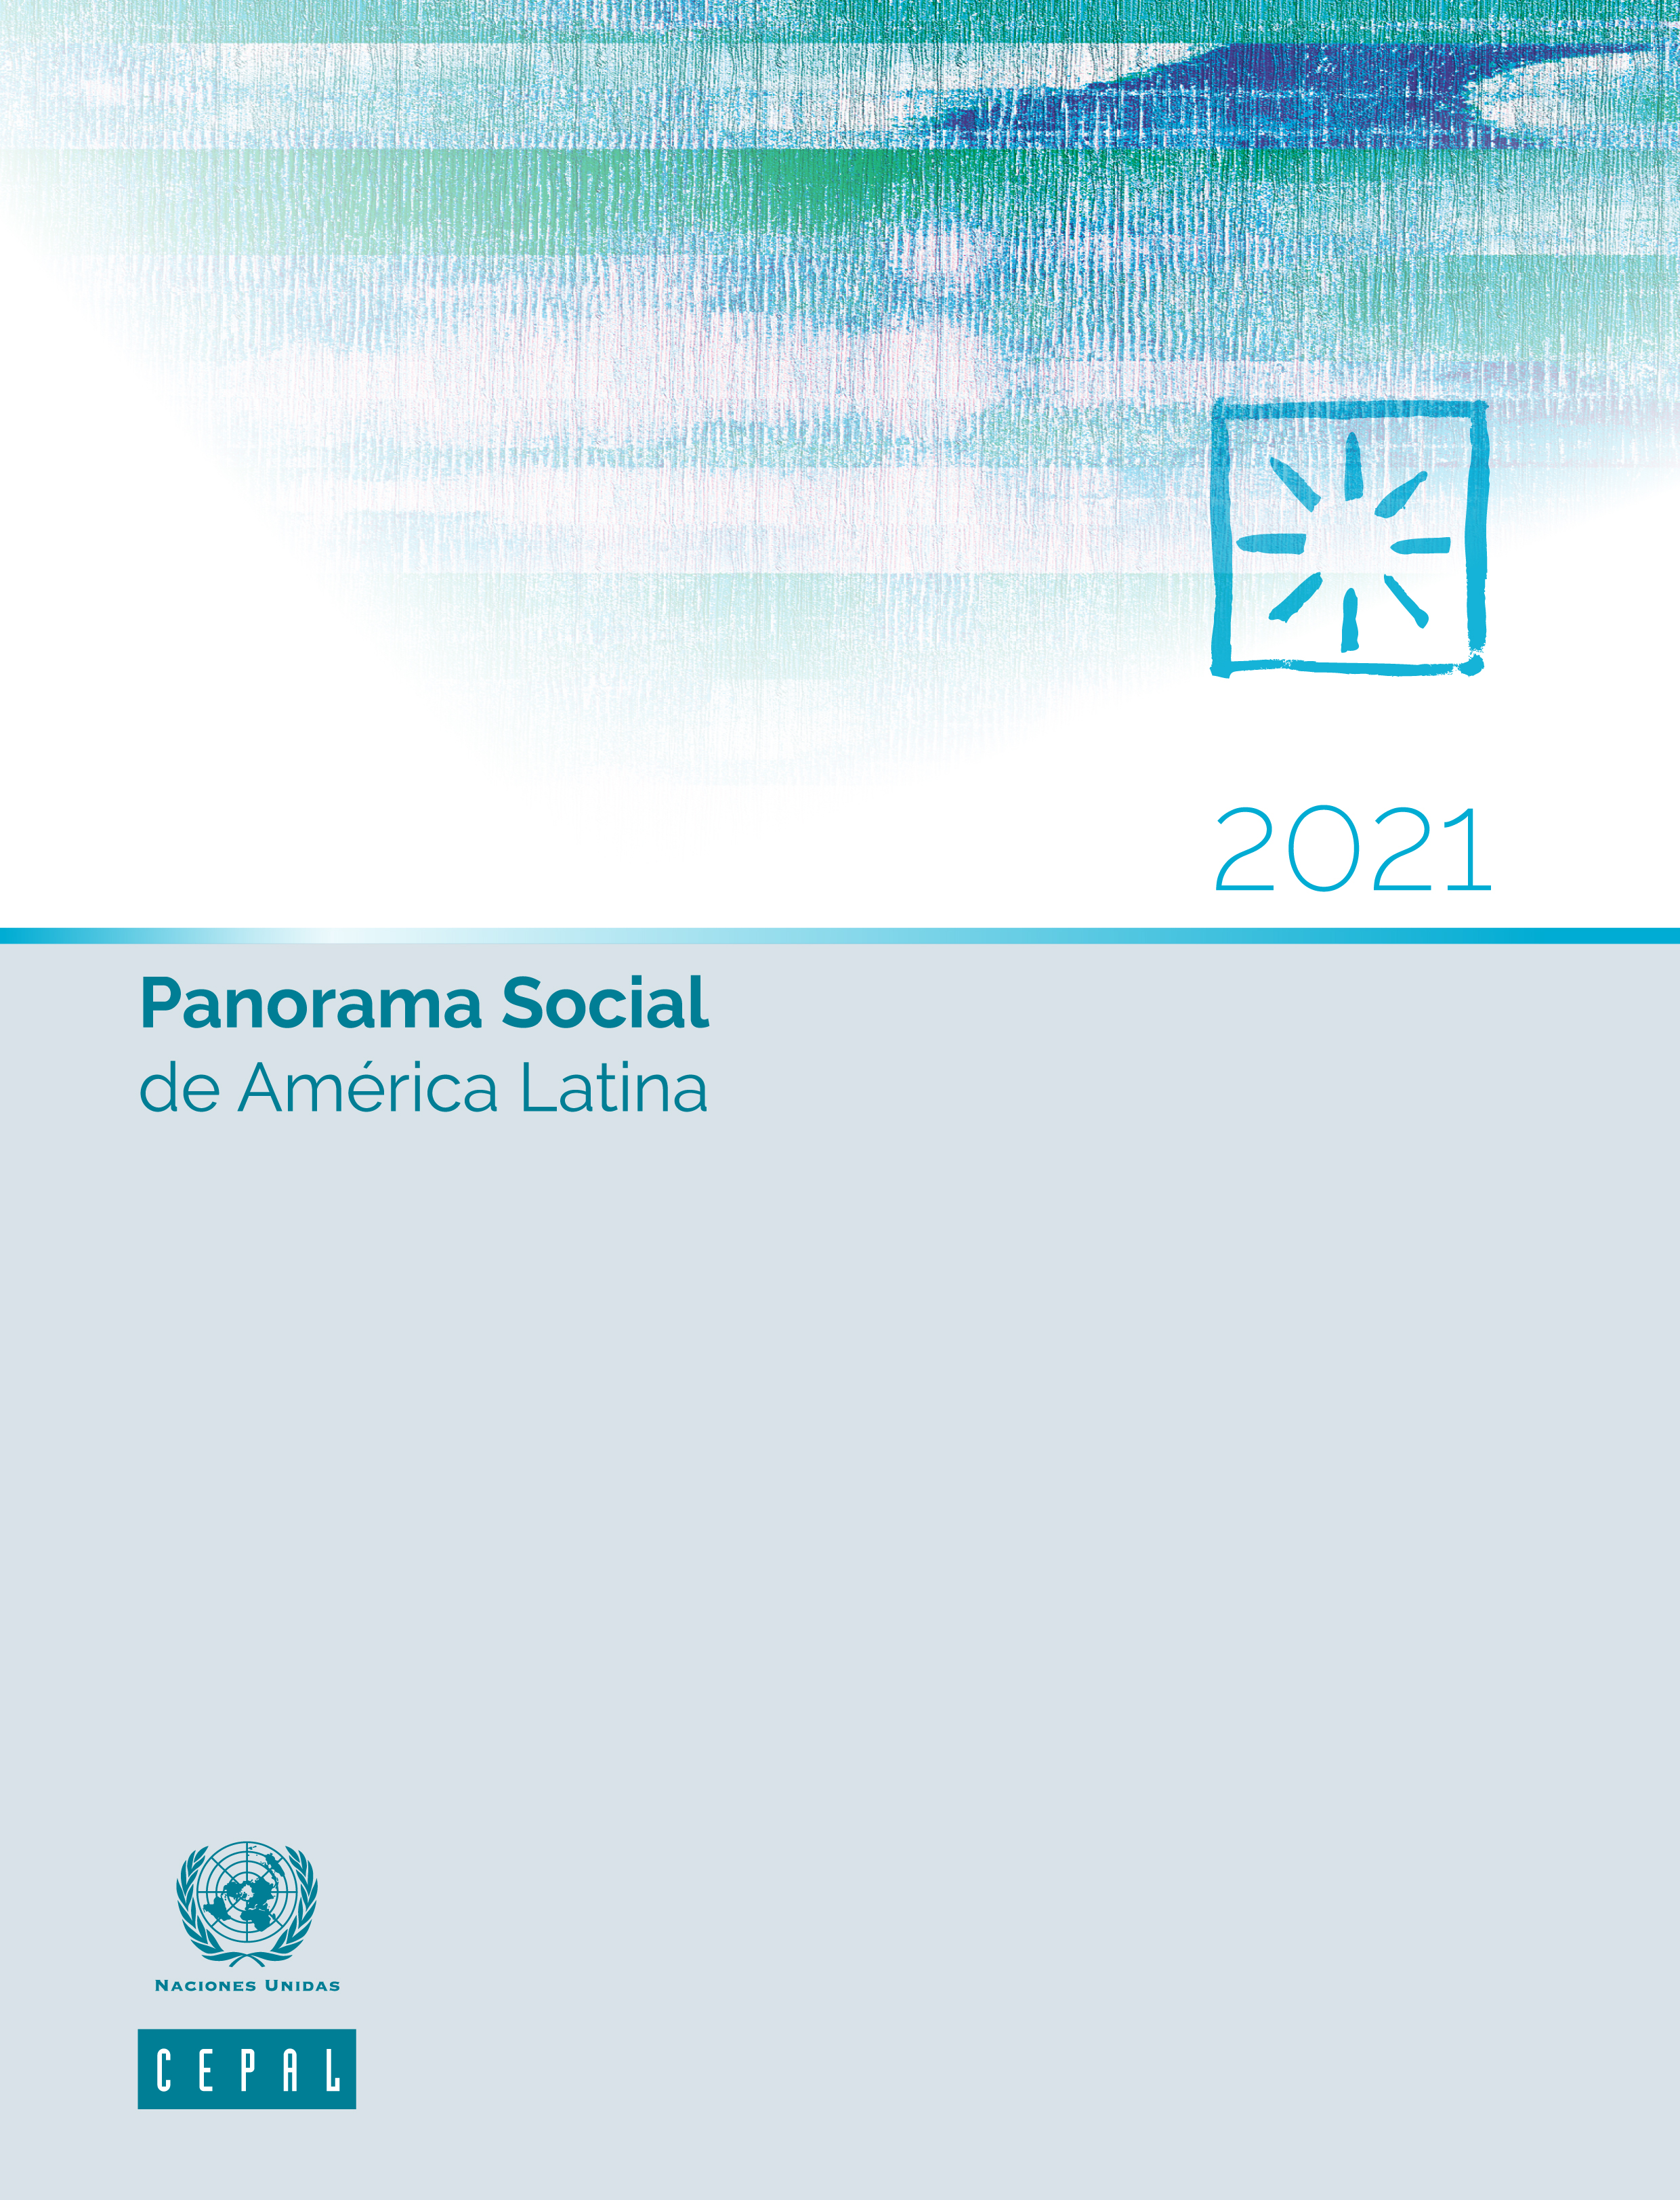 image of Panorama Social de América Latina 2021